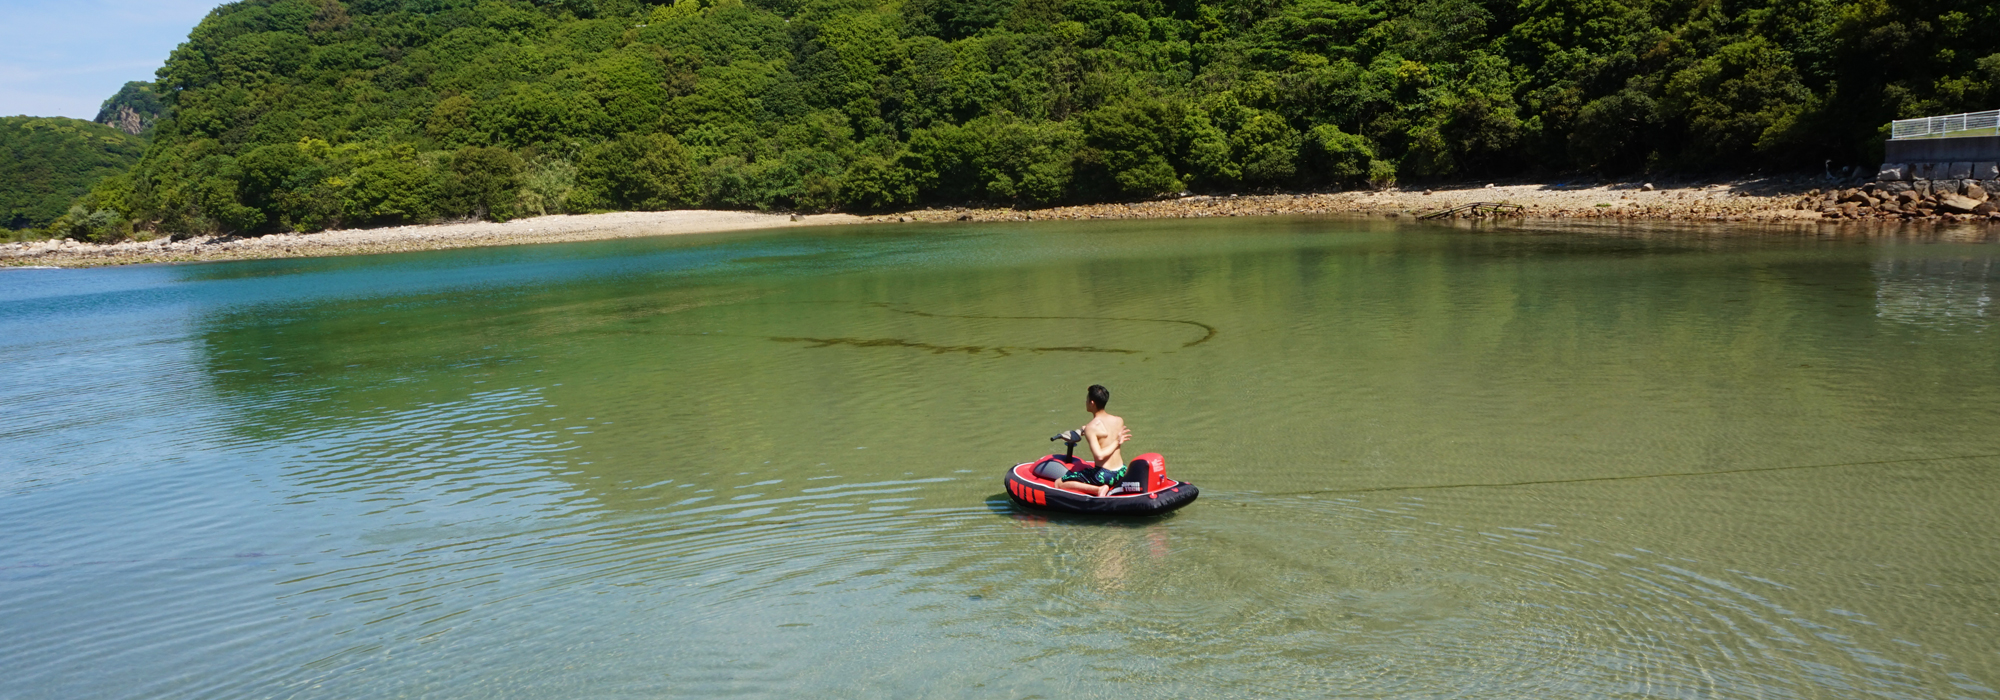 瀬戸内海の離島、小豆島の海でシースクーター体験をしよう。